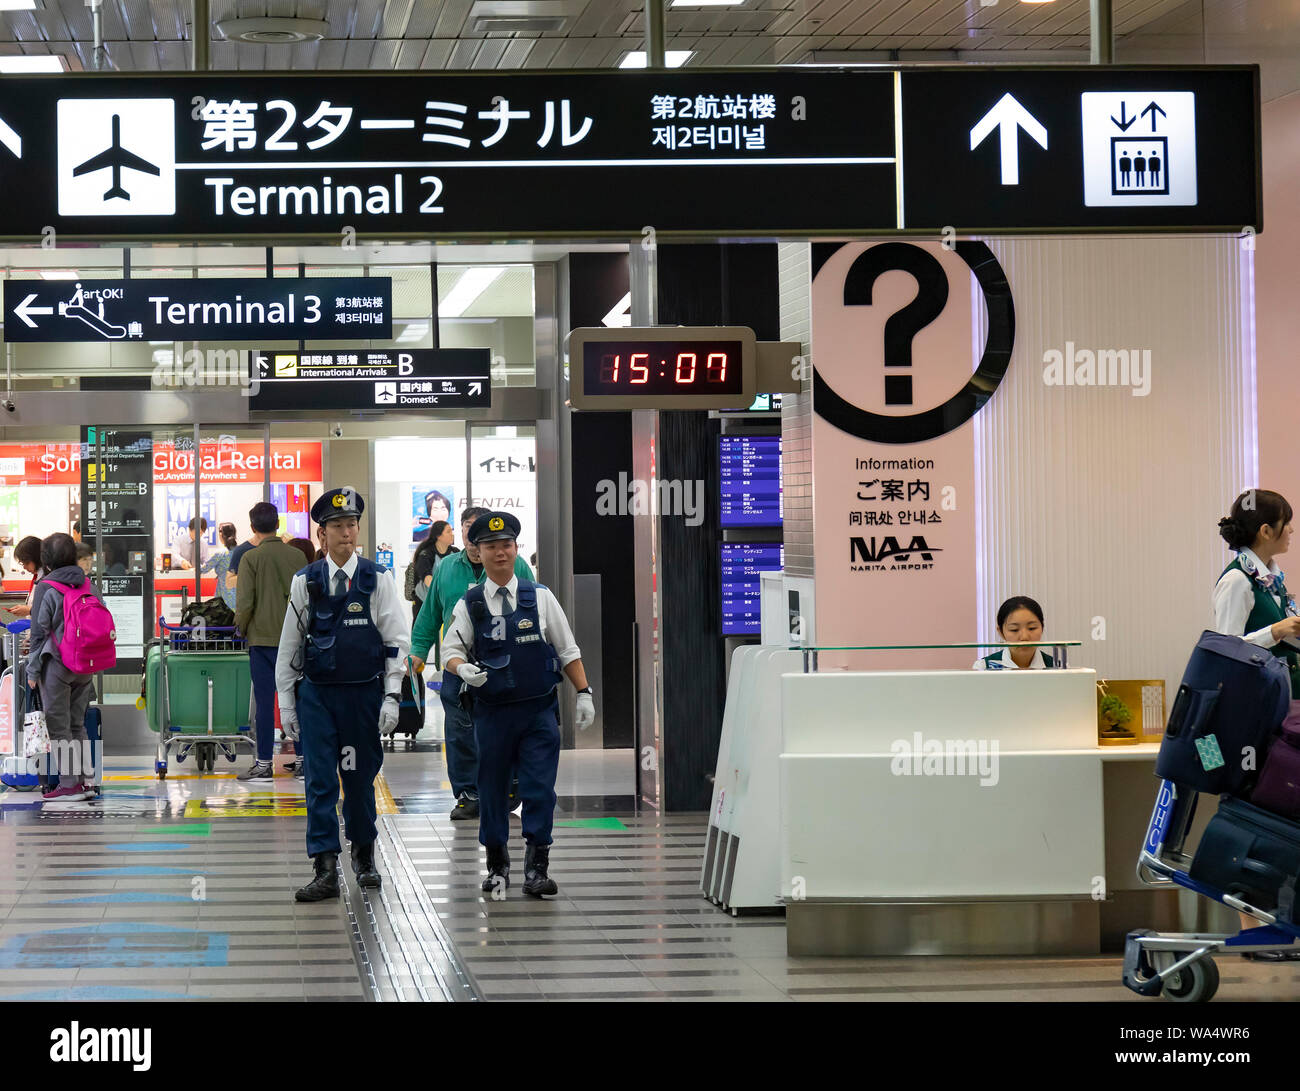 Narita, Japan - October 29th, 2018: Two policemen patroling the Narita airport, Japan Stock Photo